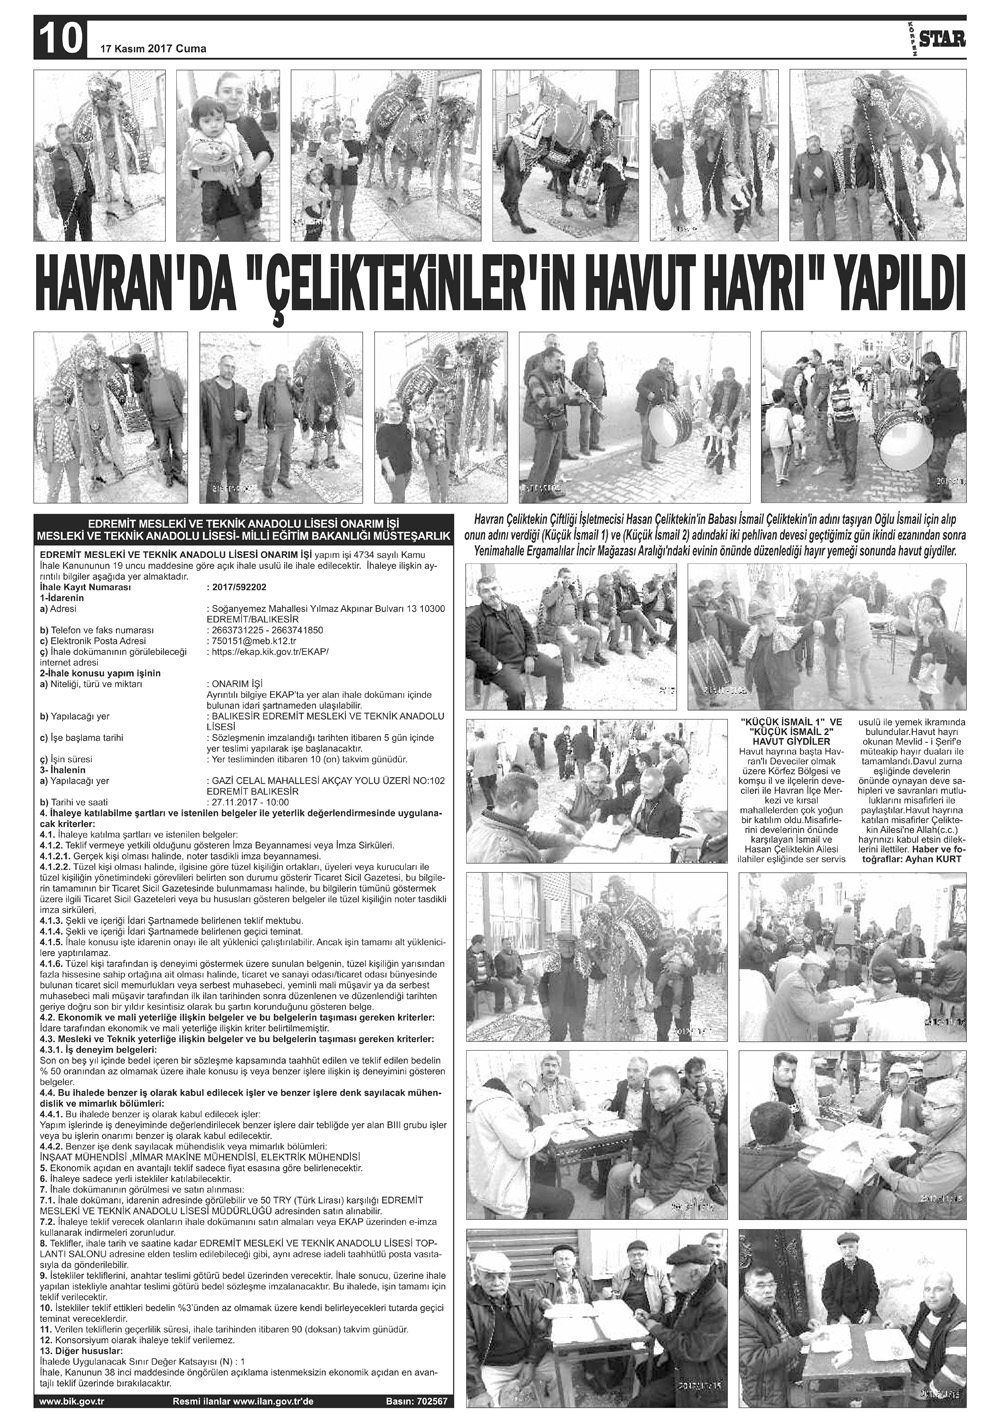 17112017-tarihli-gazetemiz-117-11-17071736.jpg